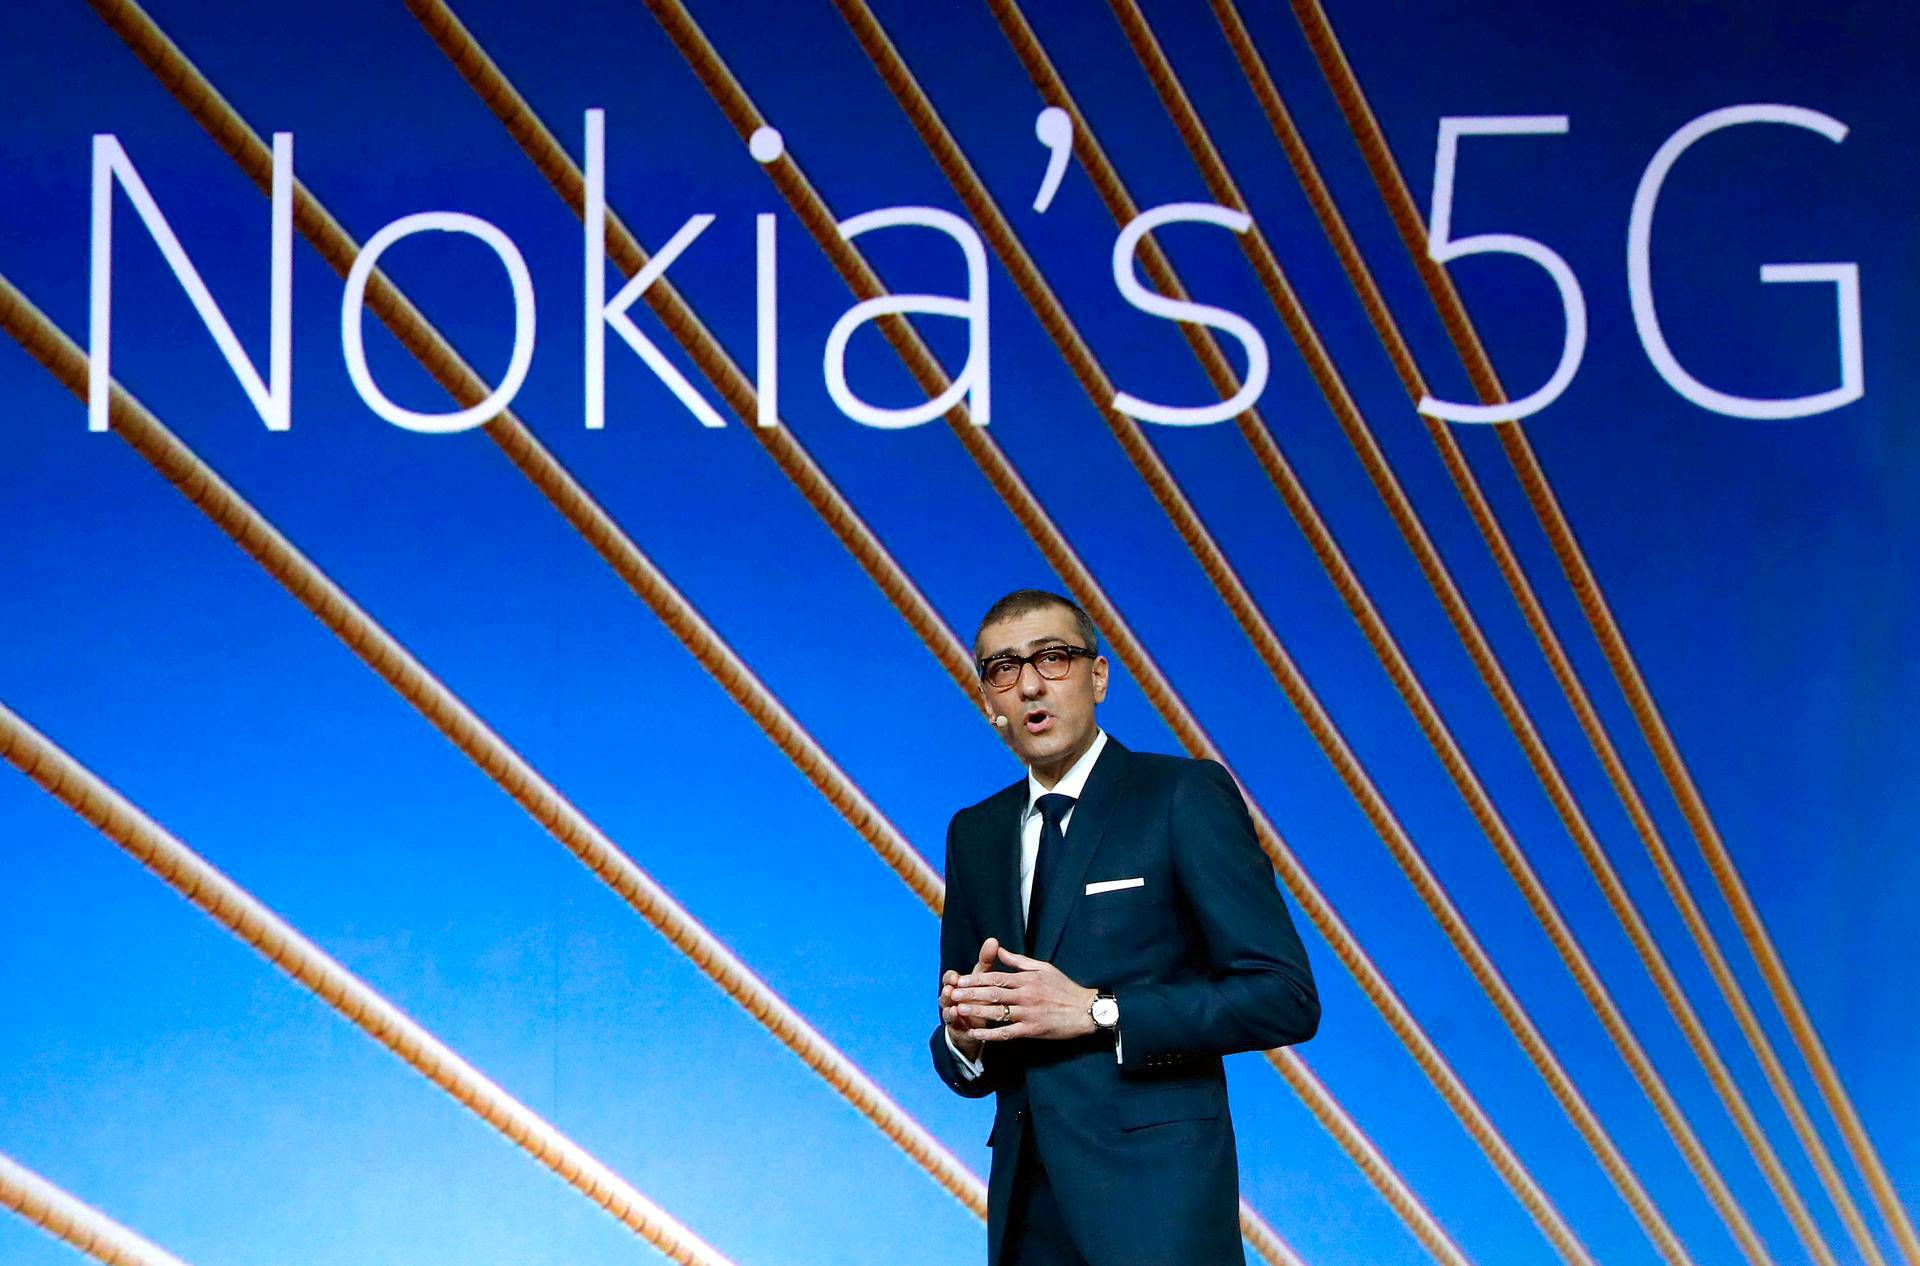 Nokia announces Pekka Lundmark as its new President & CEO_30.1